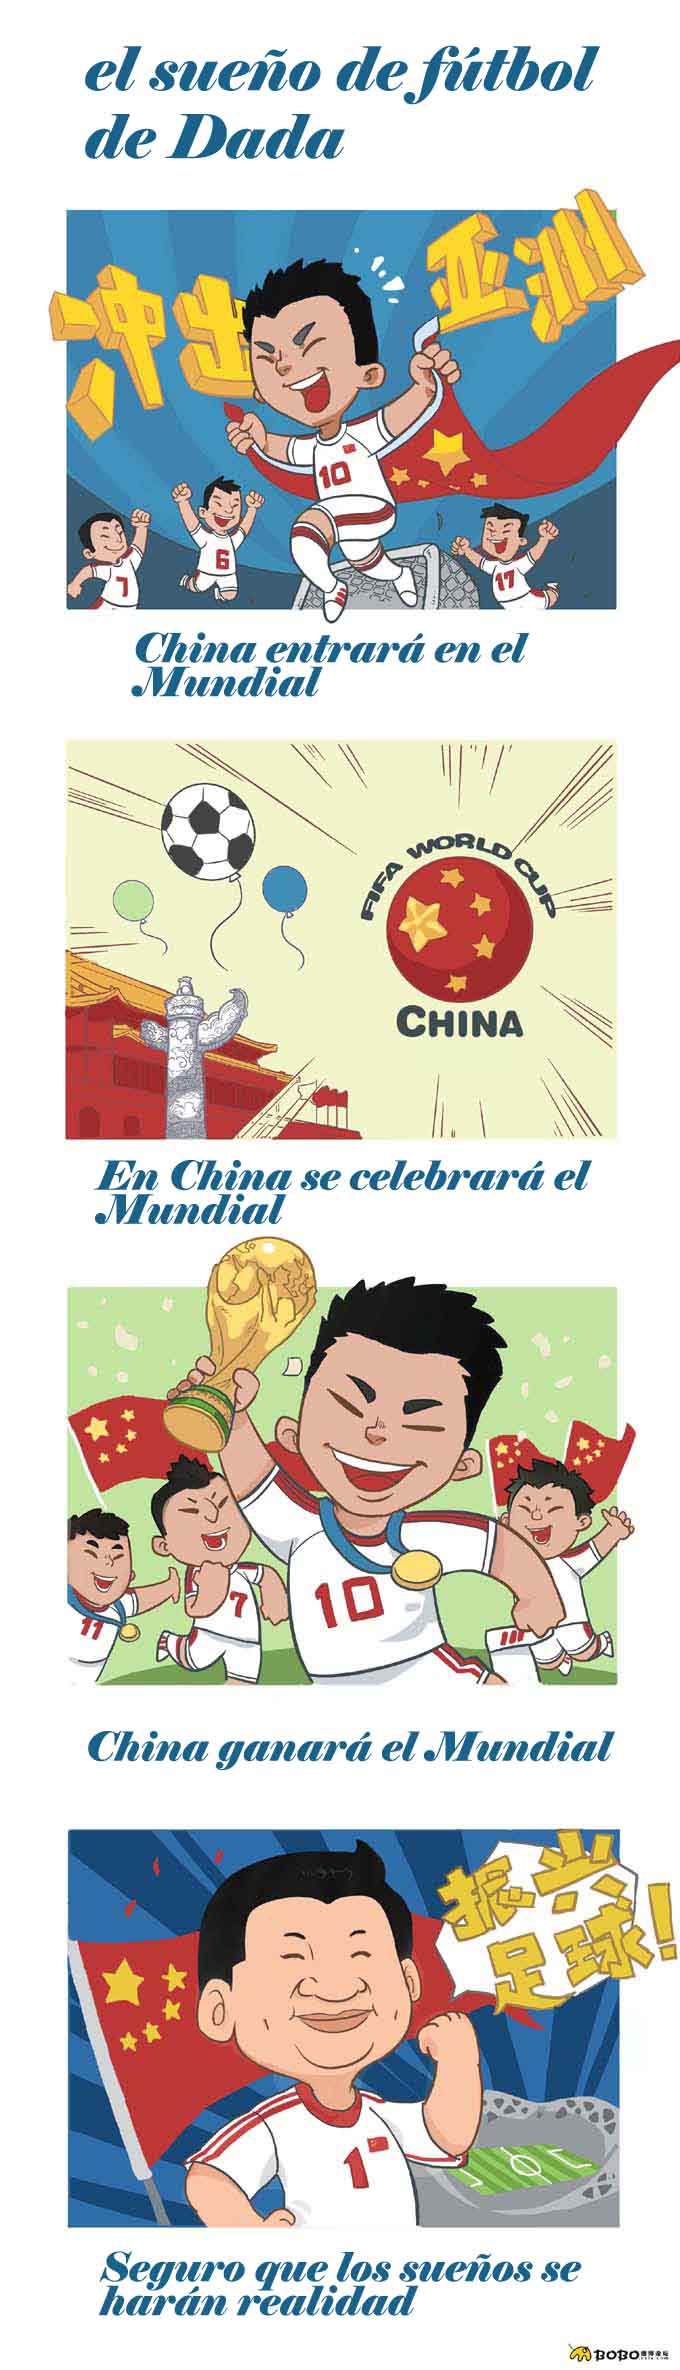 Lindo cómic original de internautas “Dada y el fútbol”